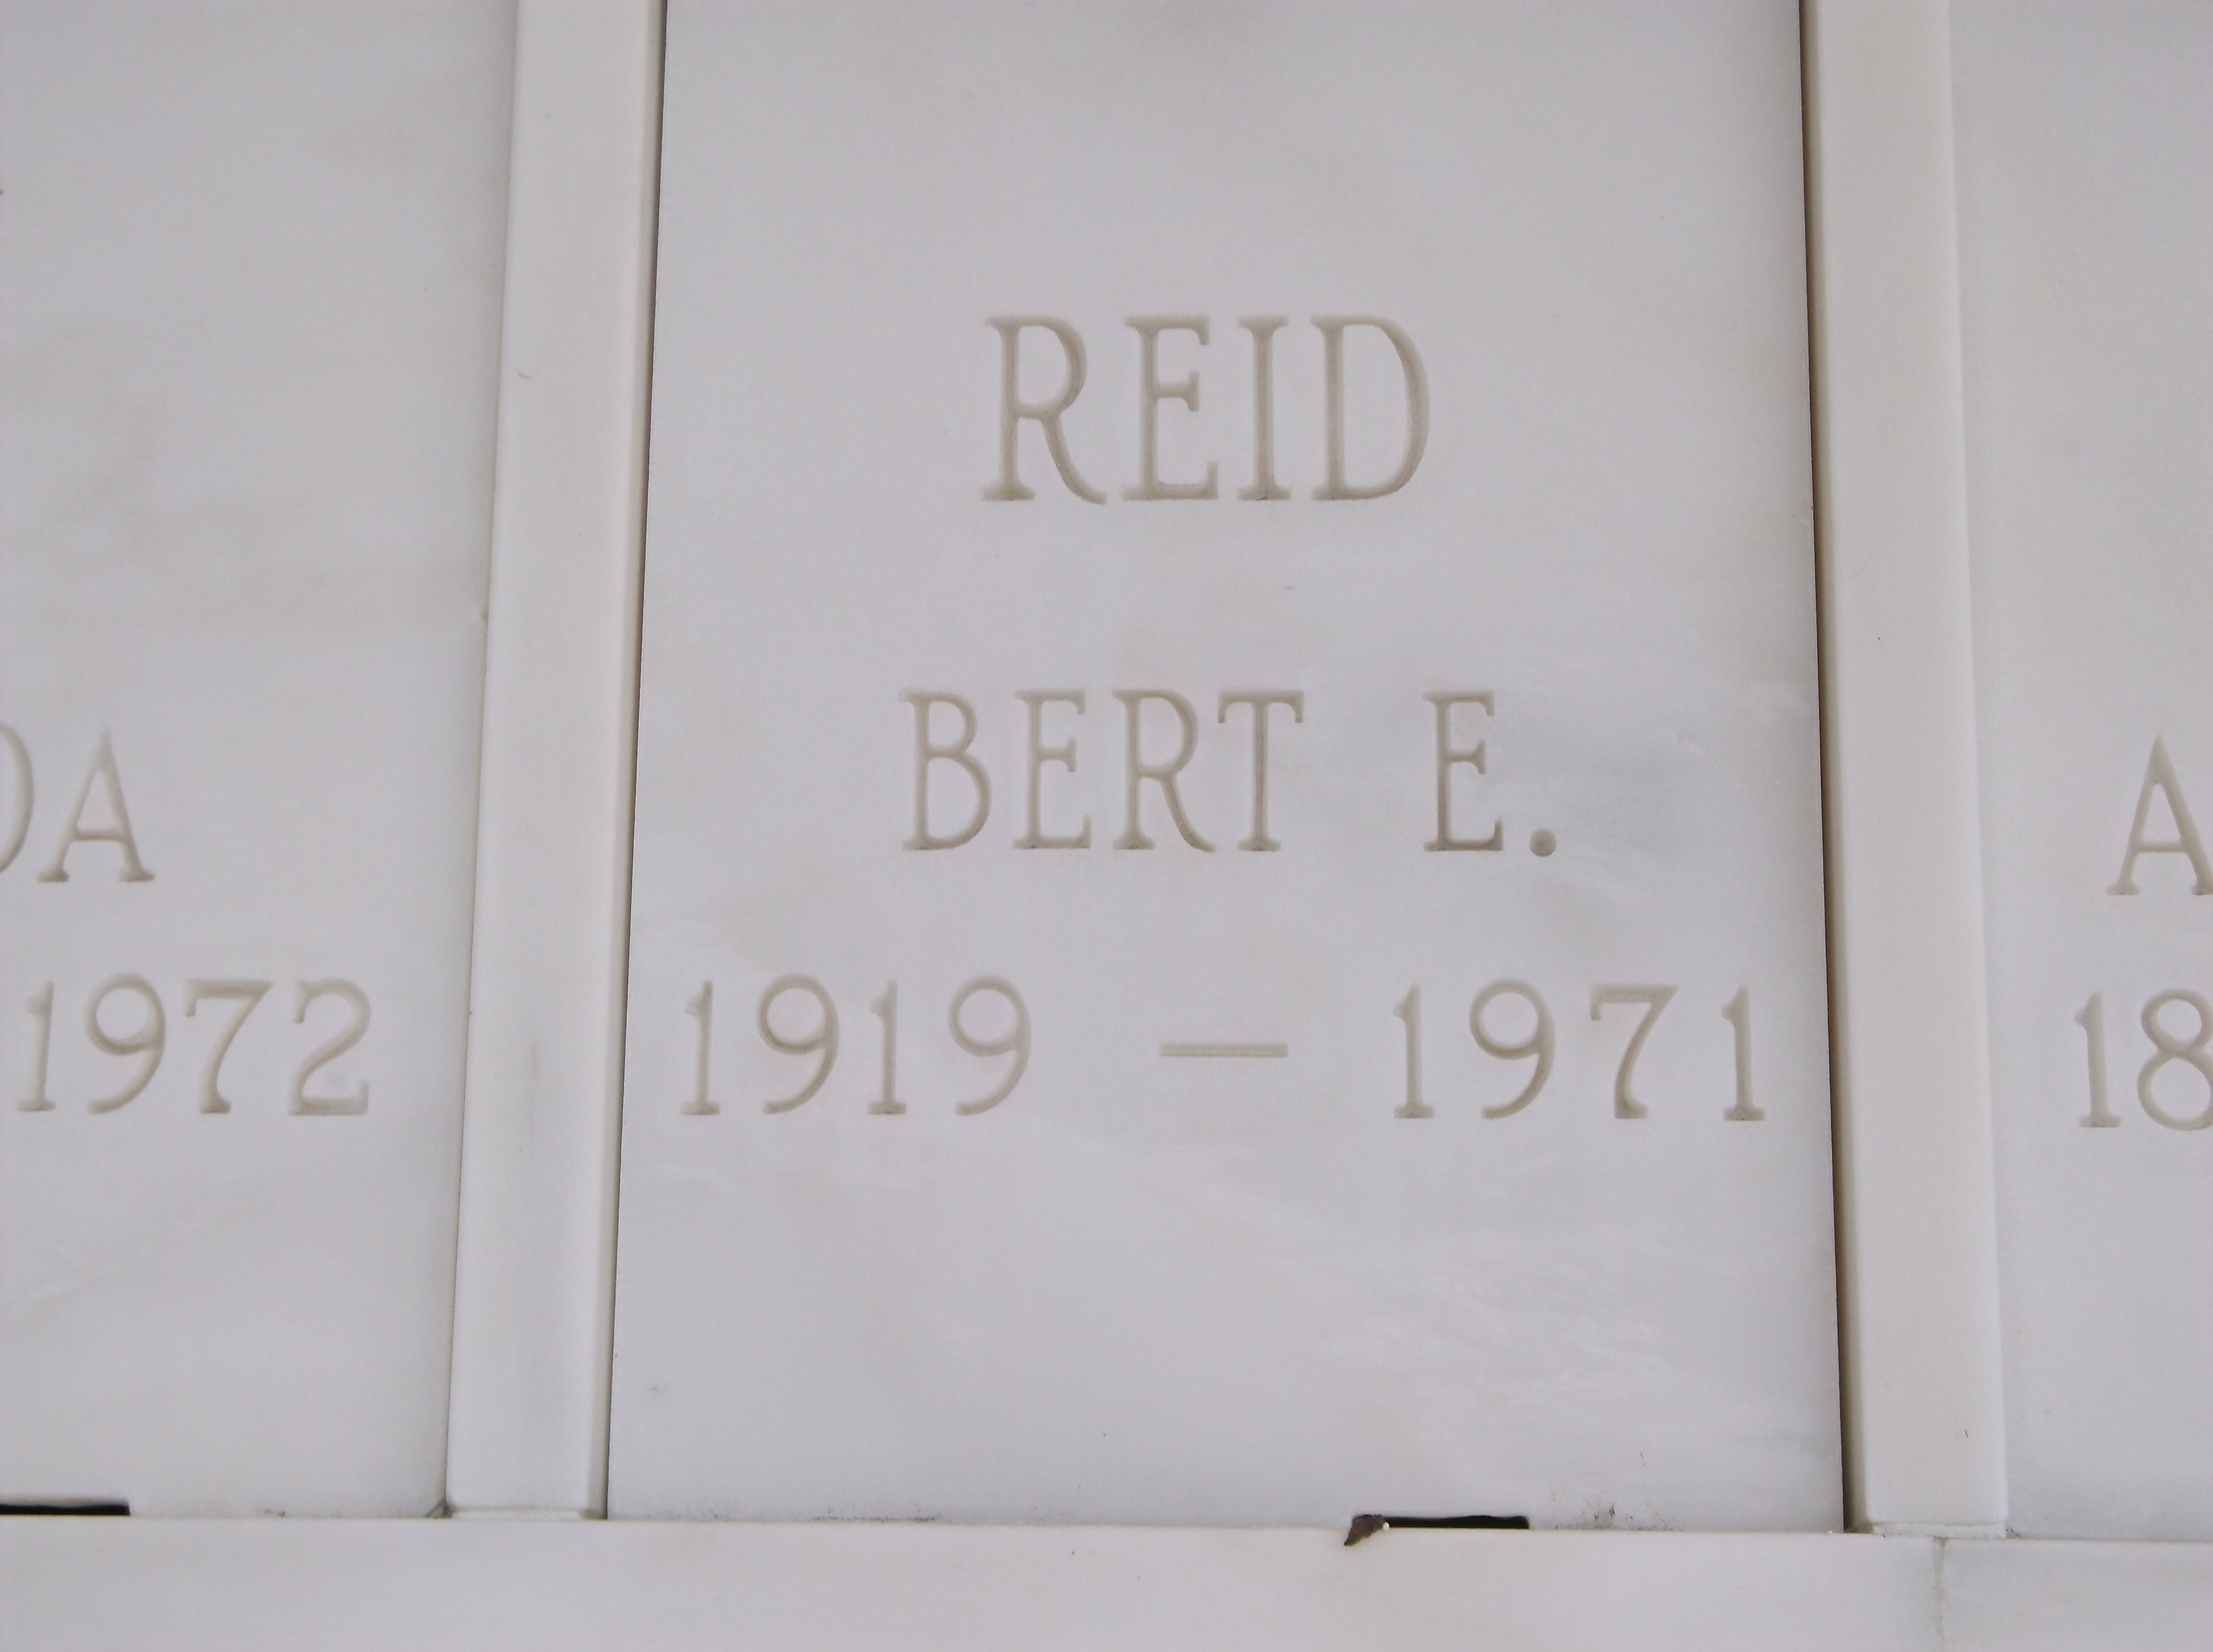 Bert E Reid